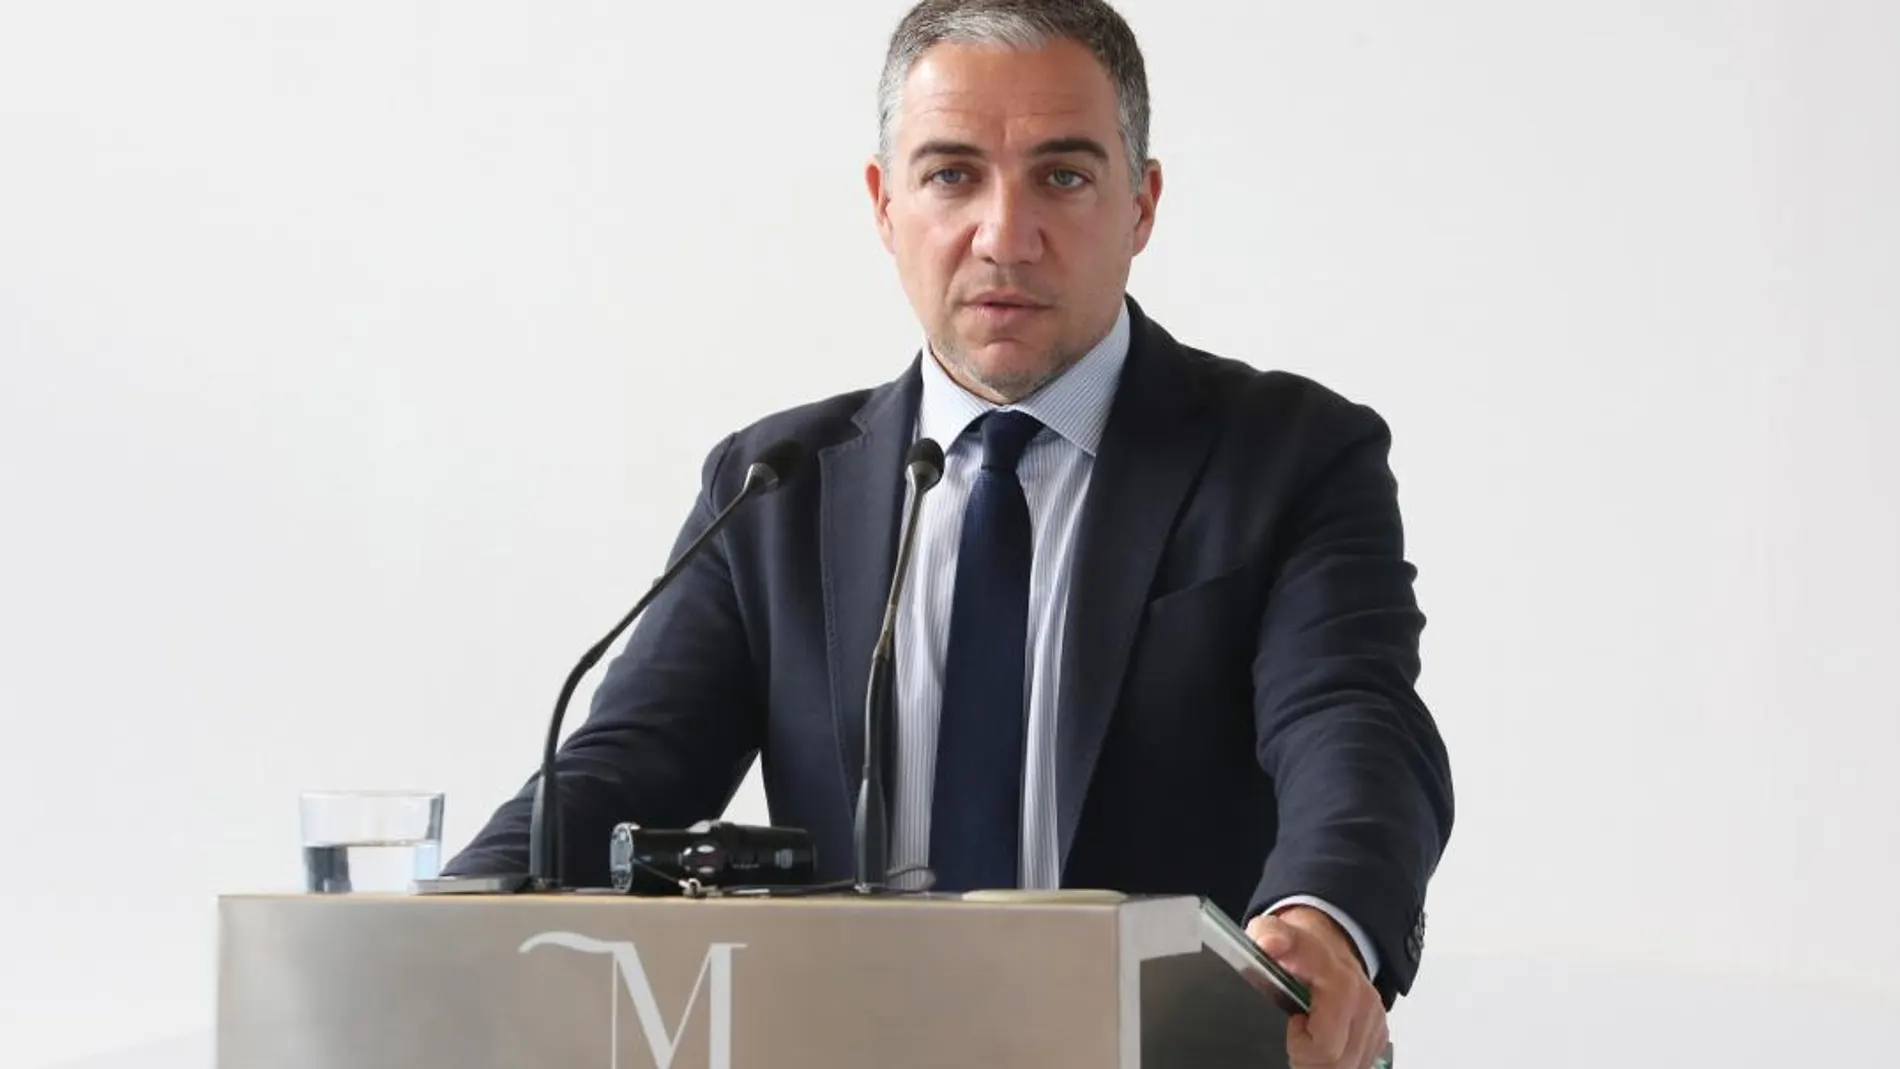 El presidente de la Diputación de Málaga, Elías Bendodo, se mostró dispuesto a la colaboración institucional